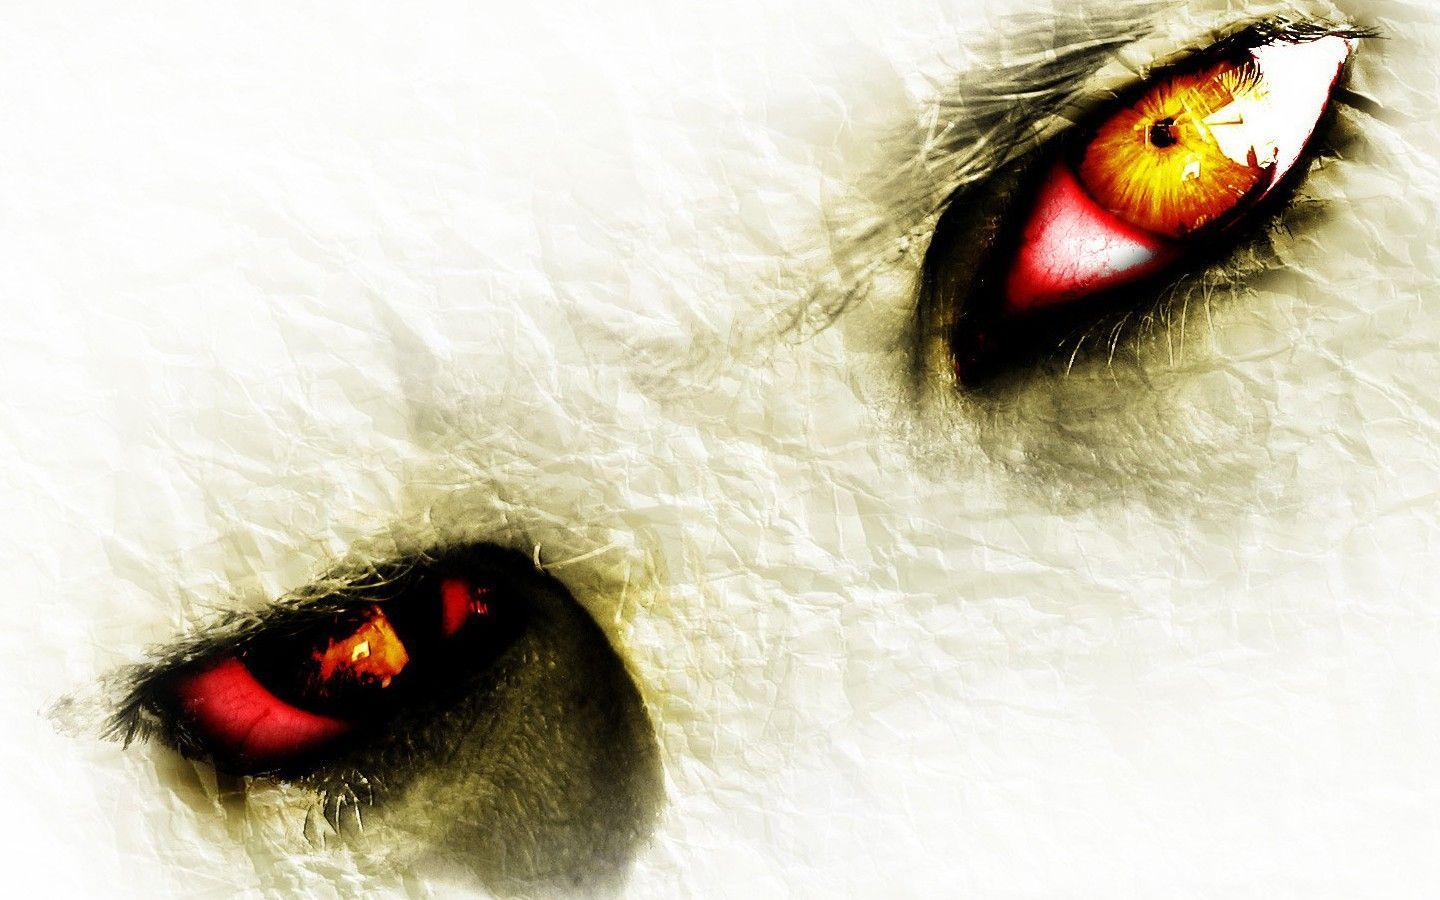 Horror evil eyes in fear Wallpaper 1440x900